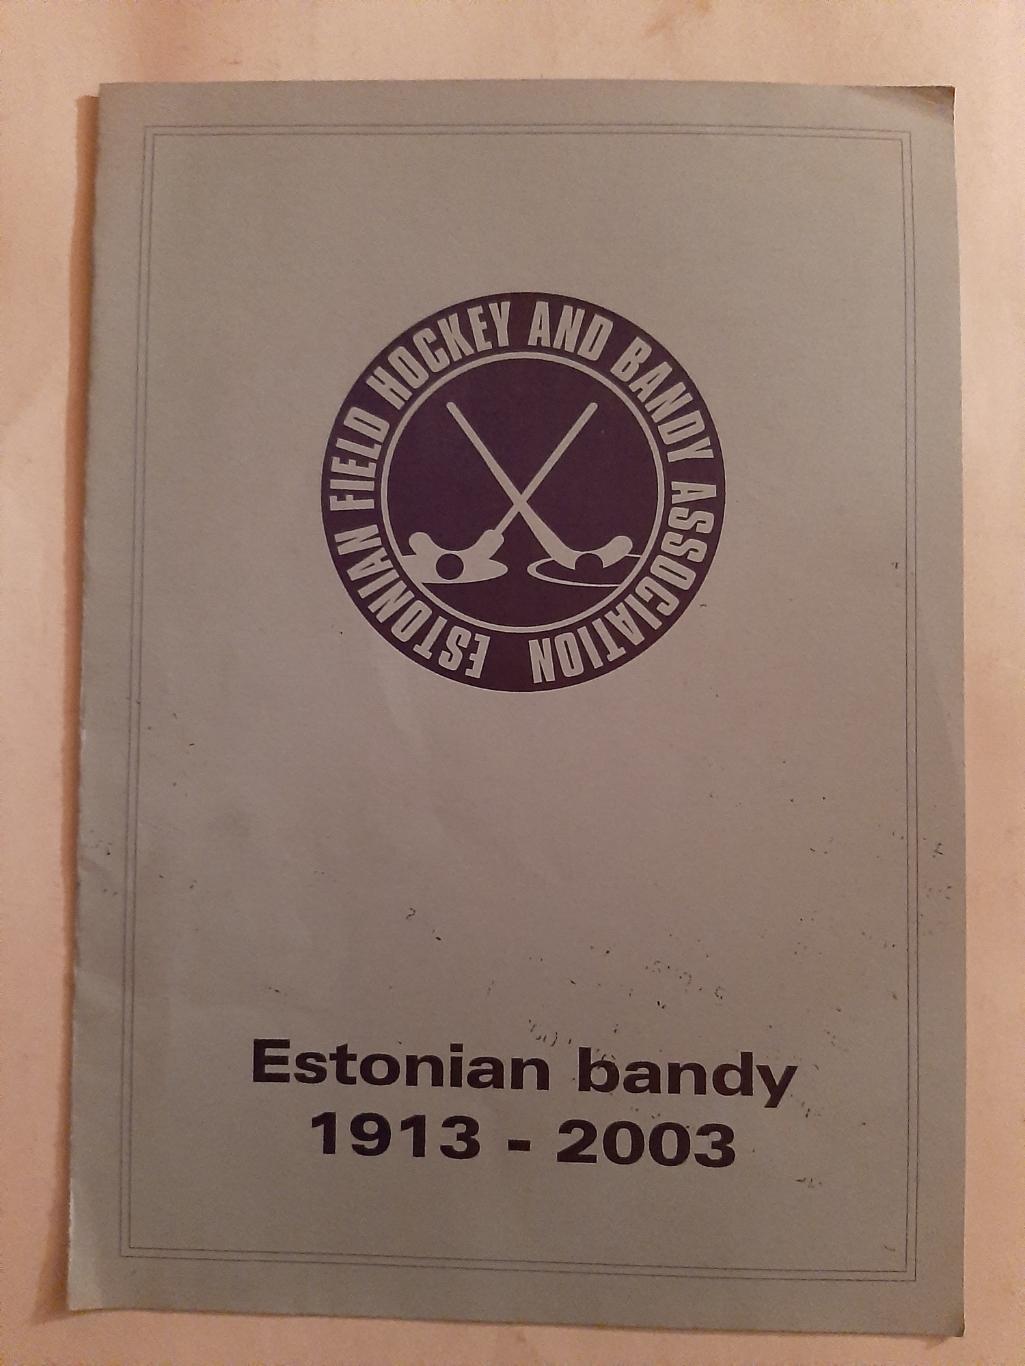 Сборная Эстонии по хоккею с мячом 1913-2003